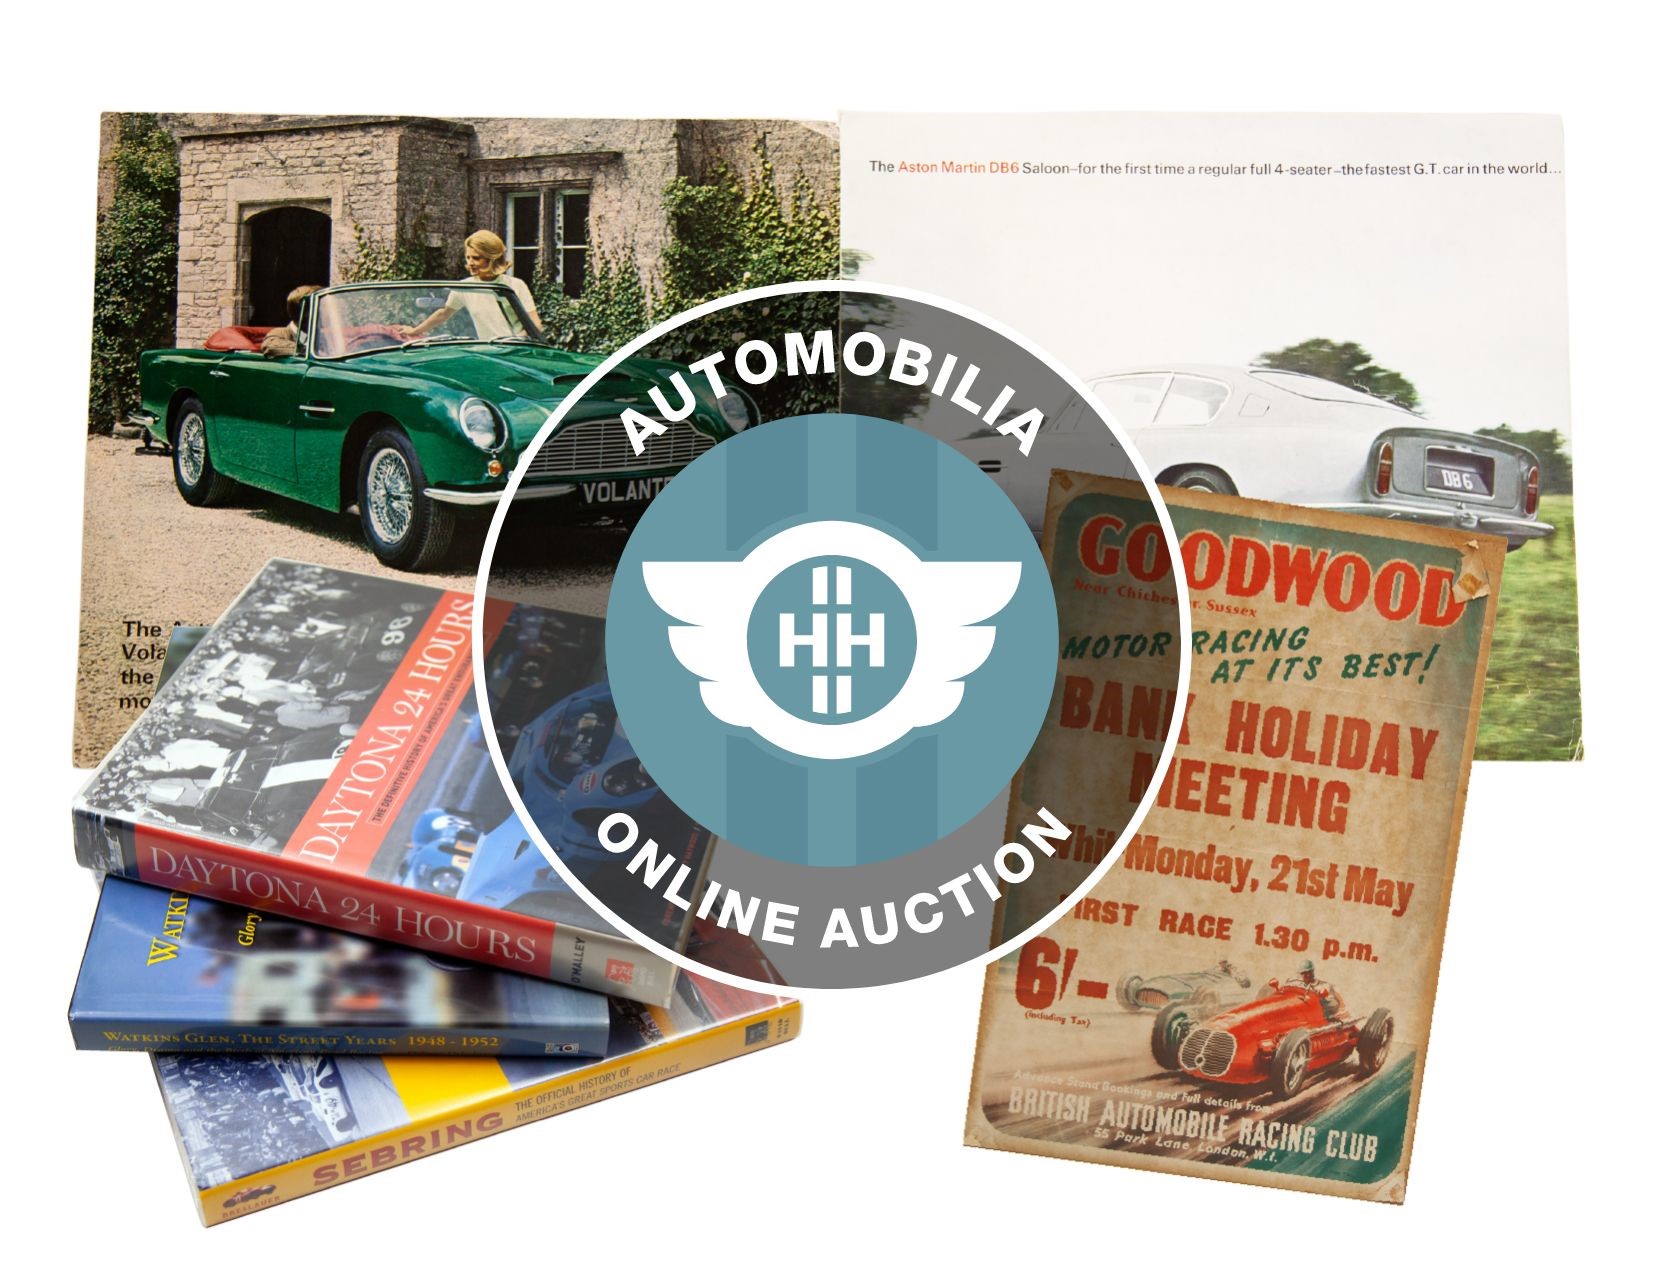 Automobilia Auction Online